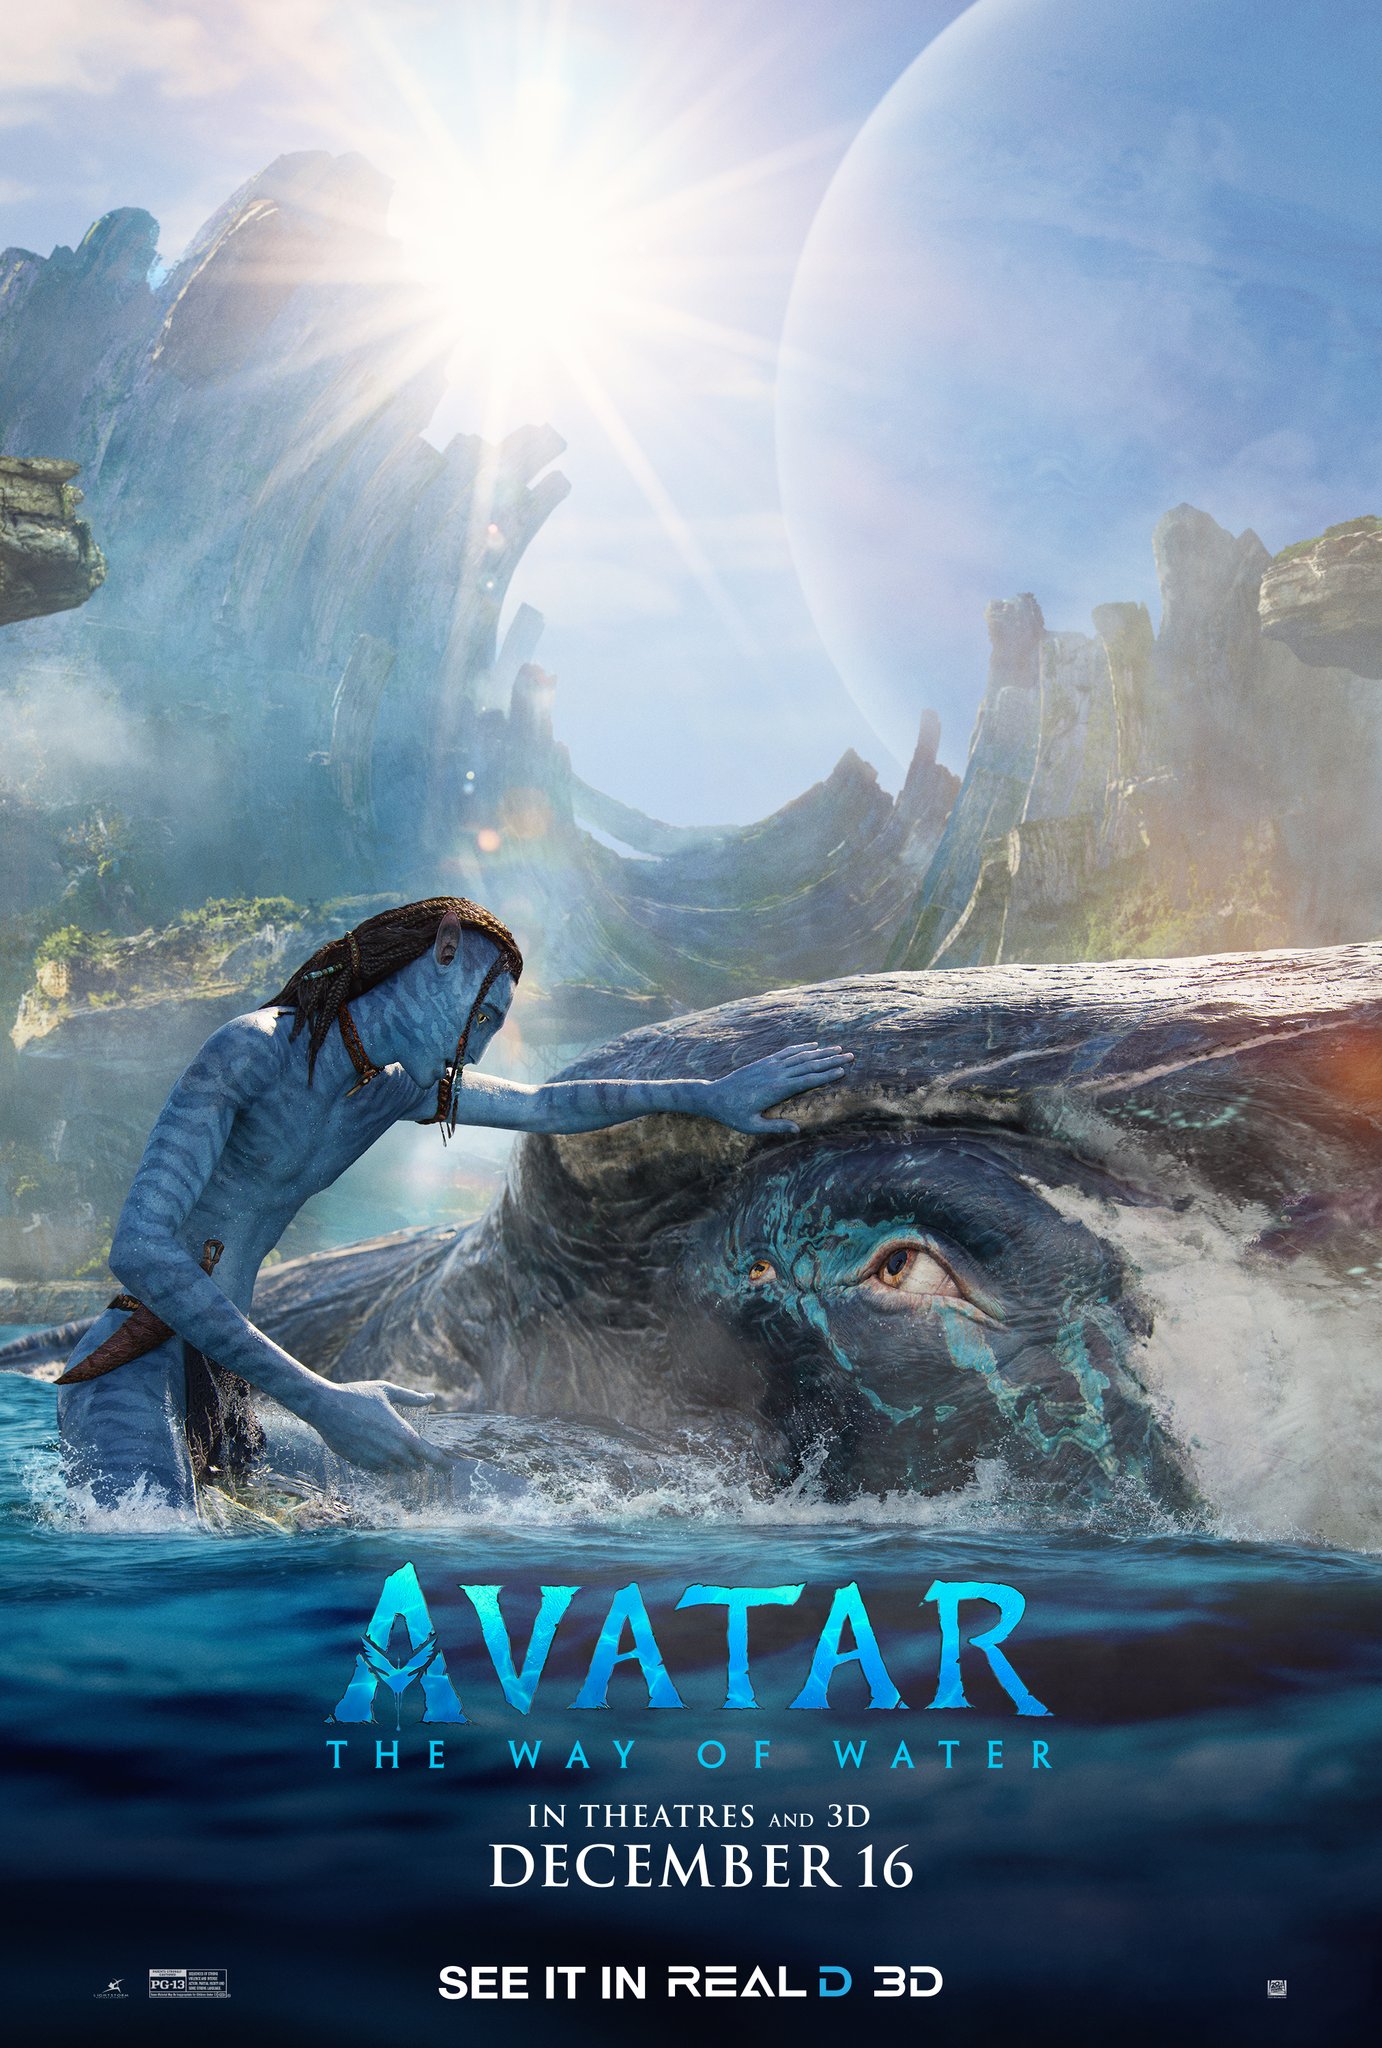 Nieuwe Avatar The Way of Water posters brengen nog meer Pandora